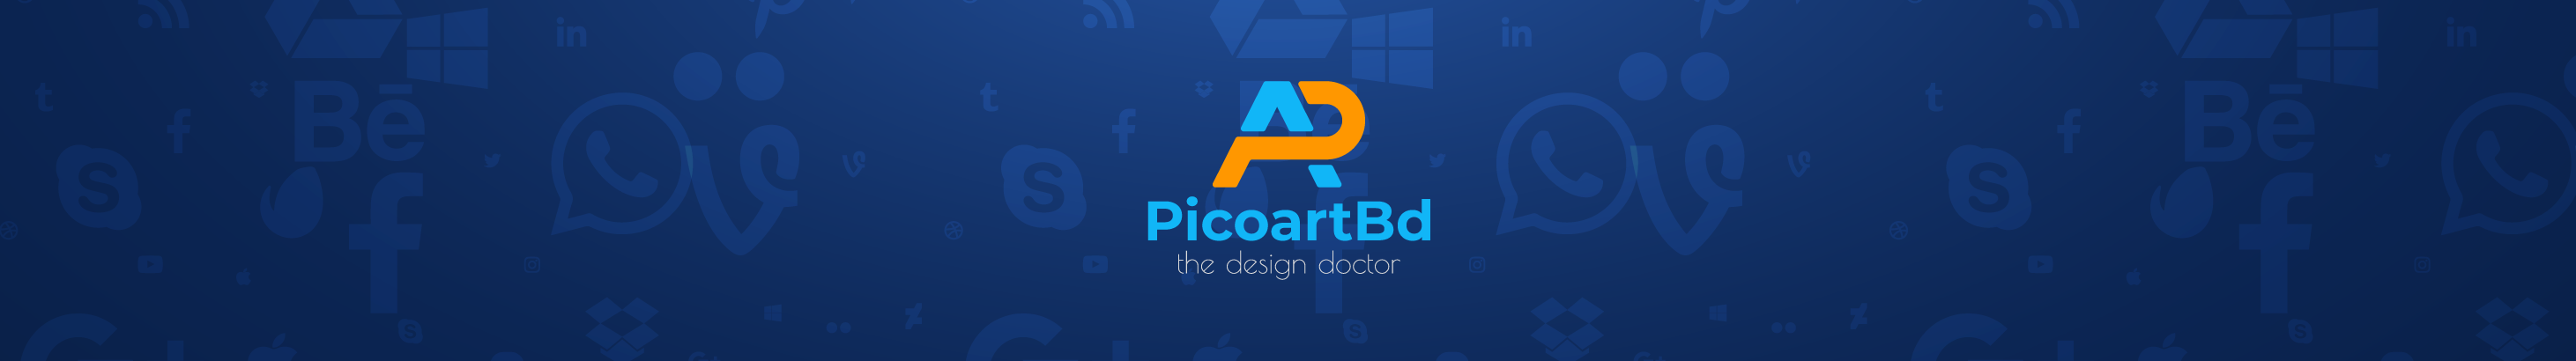 Profil-Banner von Picoart Bd